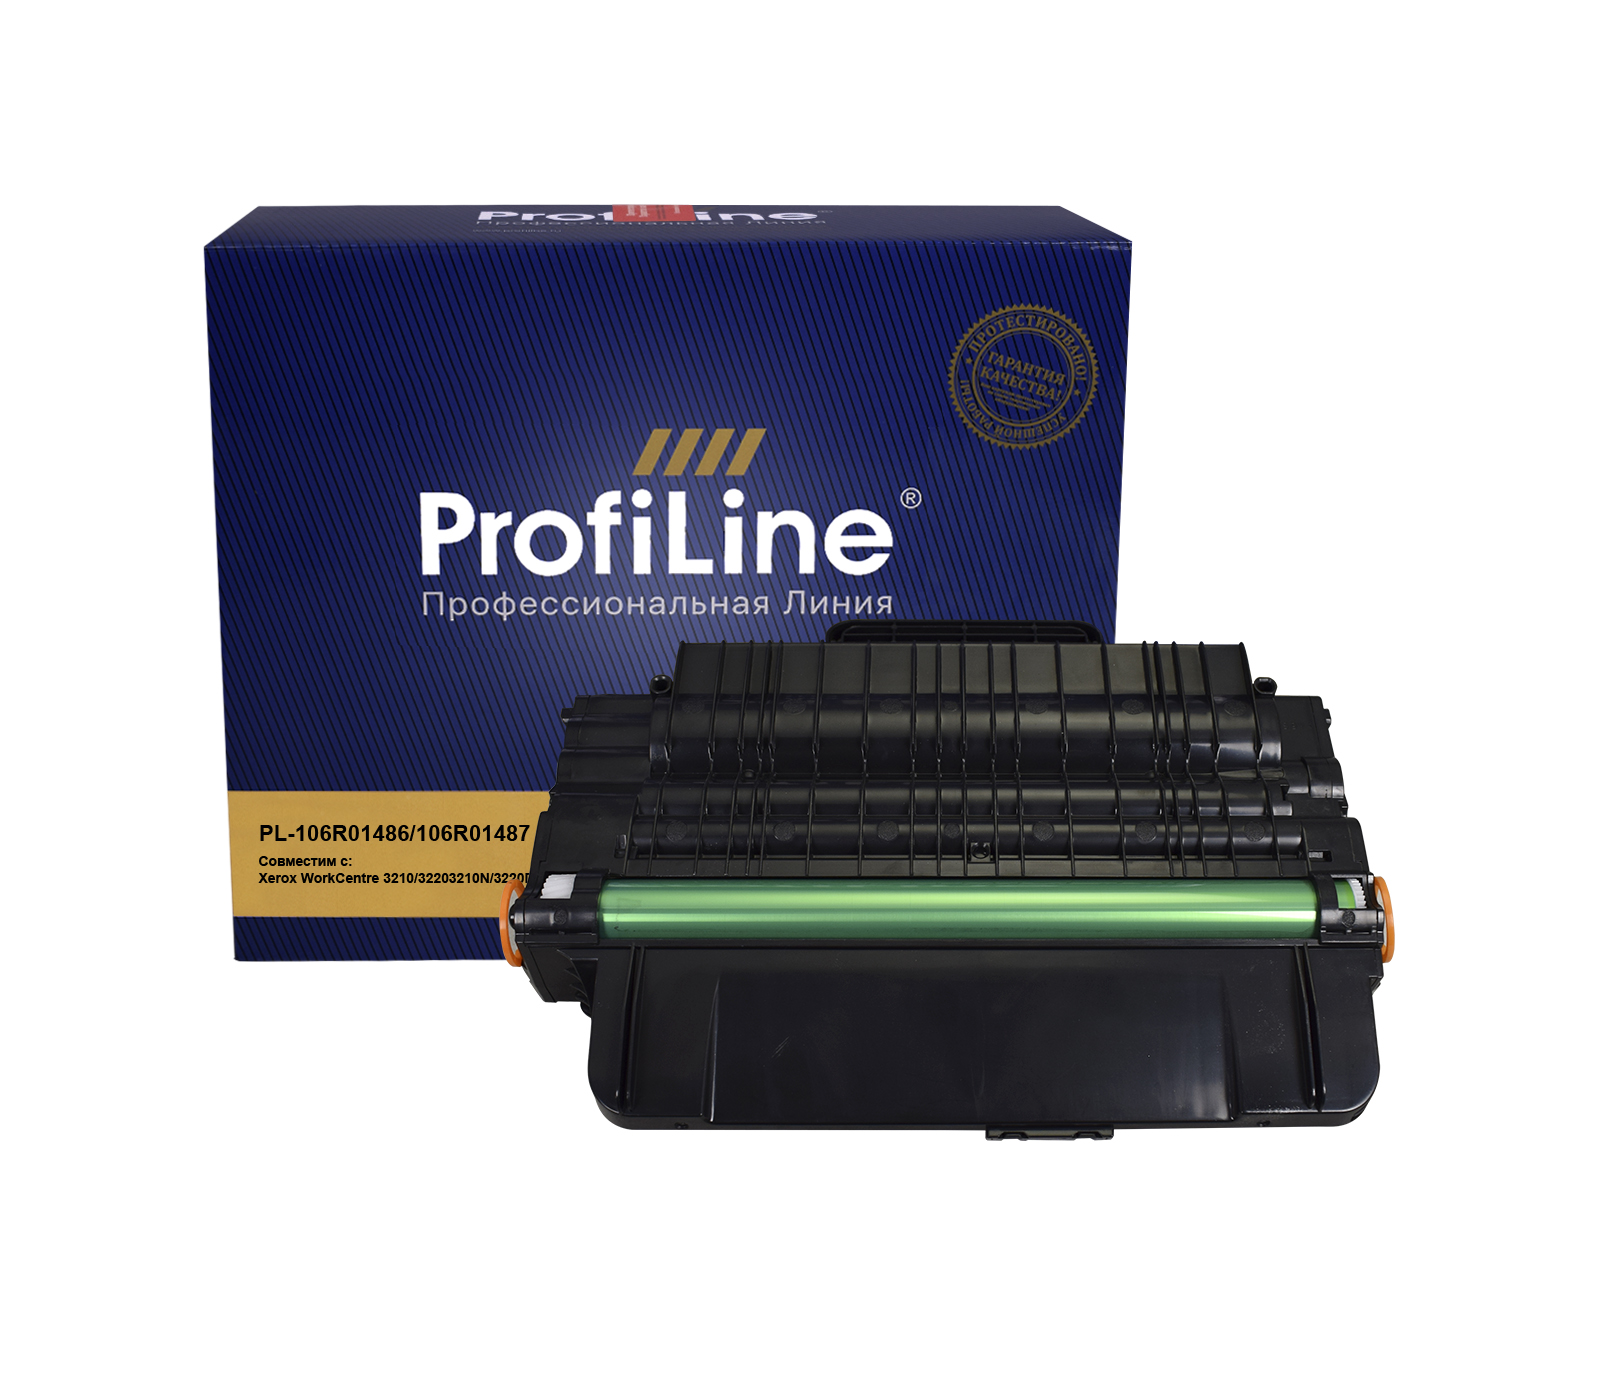 Картридж PL-106R01486/106R01487 для принтеров Xerox WorkCentre 3210/3220/3210N/3220DN 4100 копий ProfiLine картридж pl 106r01486 106r01487 для принтеров xerox workcentre 3210 3220 3210n 3220dn 4100 копий profiline